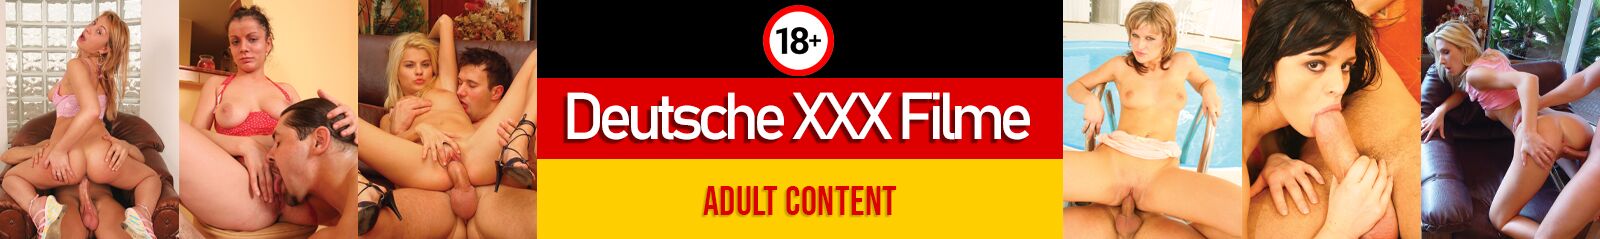 Deutsche XXX Filme